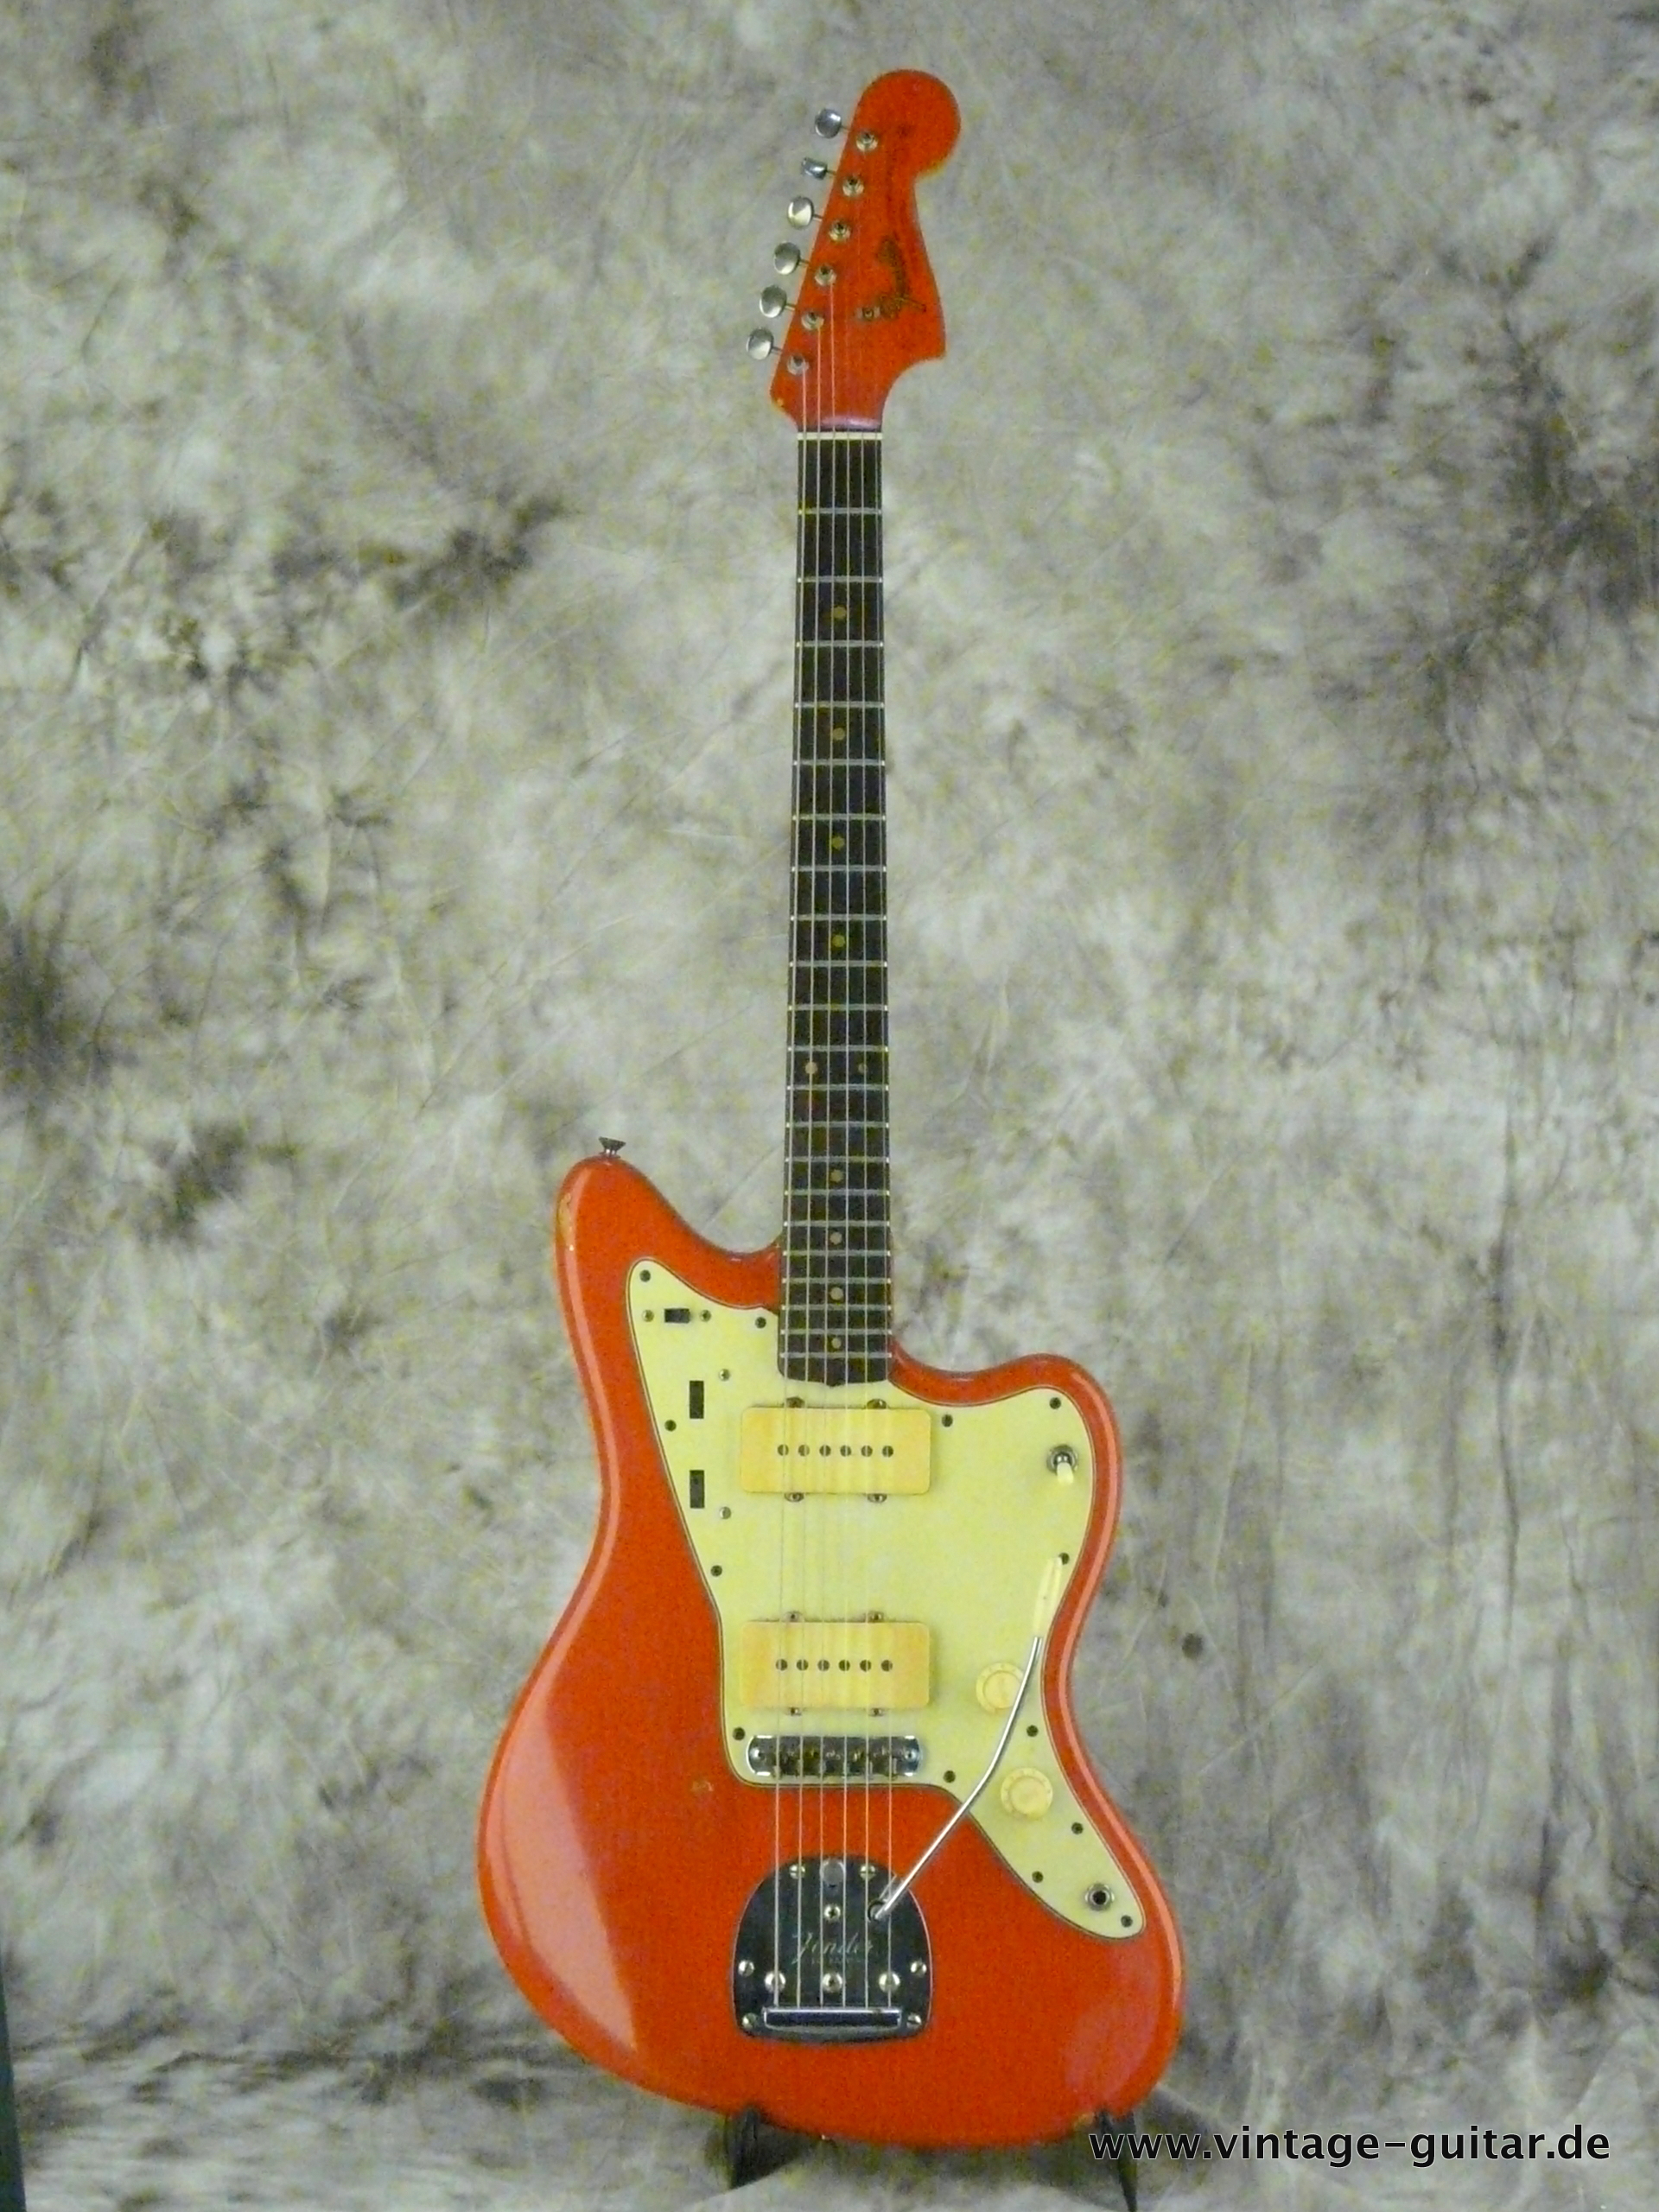 Fender-Jazzmaster-1964-refinished-fiesta-red-001.JPG